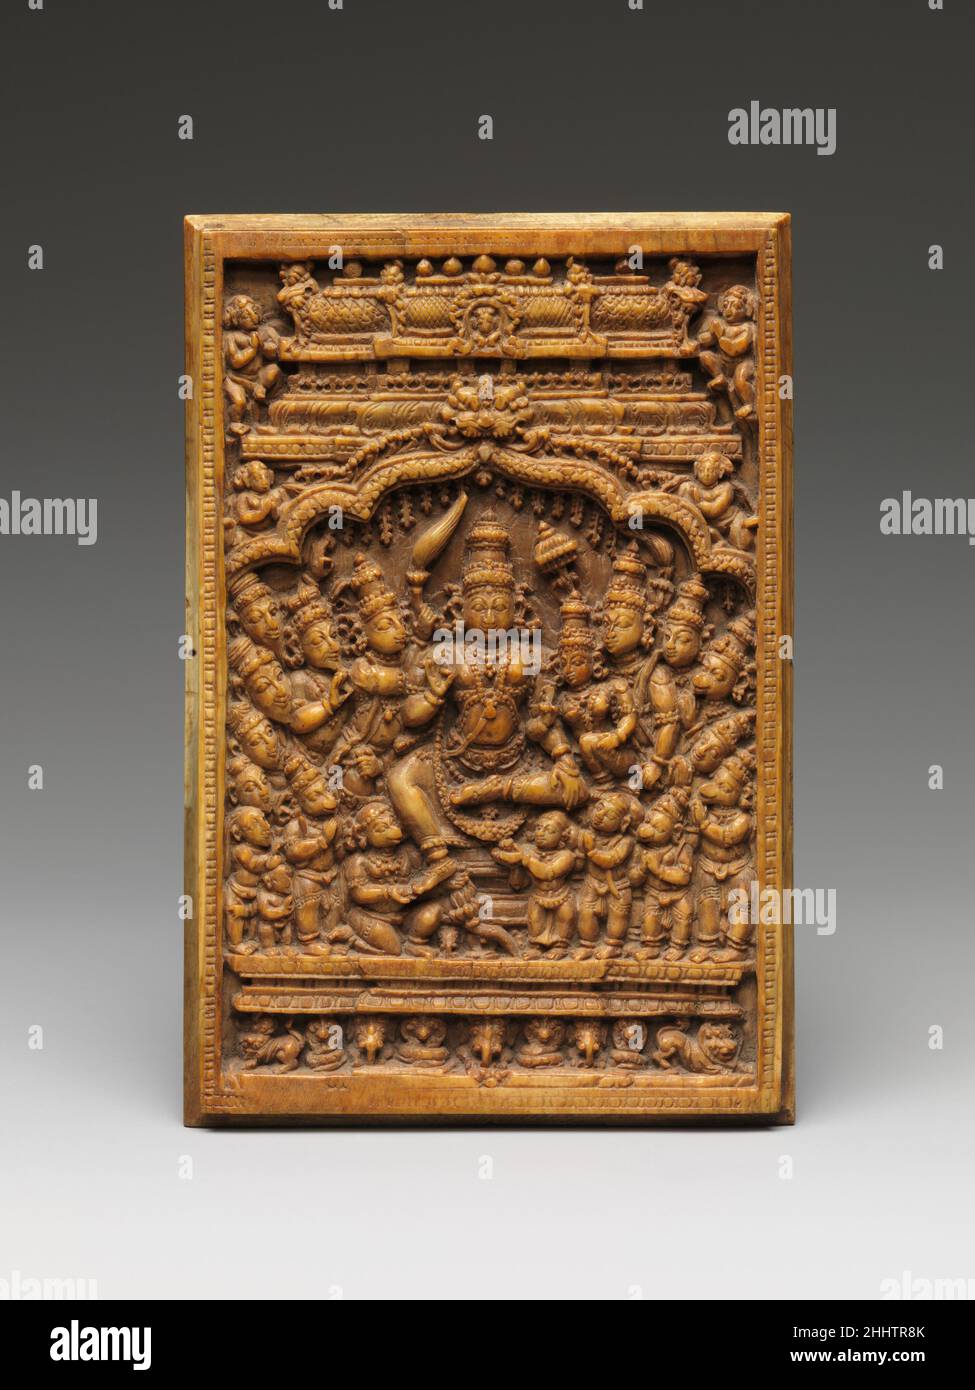 Rama, Sita et Lakshmana étant honorés par Sages, Hanuman,Et son armée 17th–18th siècle Inde (Tamil Nadu) ce petit panneau, probablement pour culte dans un sanctuaire de la maison, dépeint un Rama entroné, la septième incarnation de Vishnu, assisté par son consort, Sita, et à sa droite le jeune frère de Rama, Lakshmana, tenant un arc.Le noble ensemble est vénéré par une assemblée d'hommes saints (risishis) et l'armée de singes de Hanuman, tous tenant leurs mains dans la mudra anjali, un geste de révérence.Hanuman lui-même s'agenouille devant son Seigneur et touche son pied, un acte de profond respect.Le set divin Banque D'Images